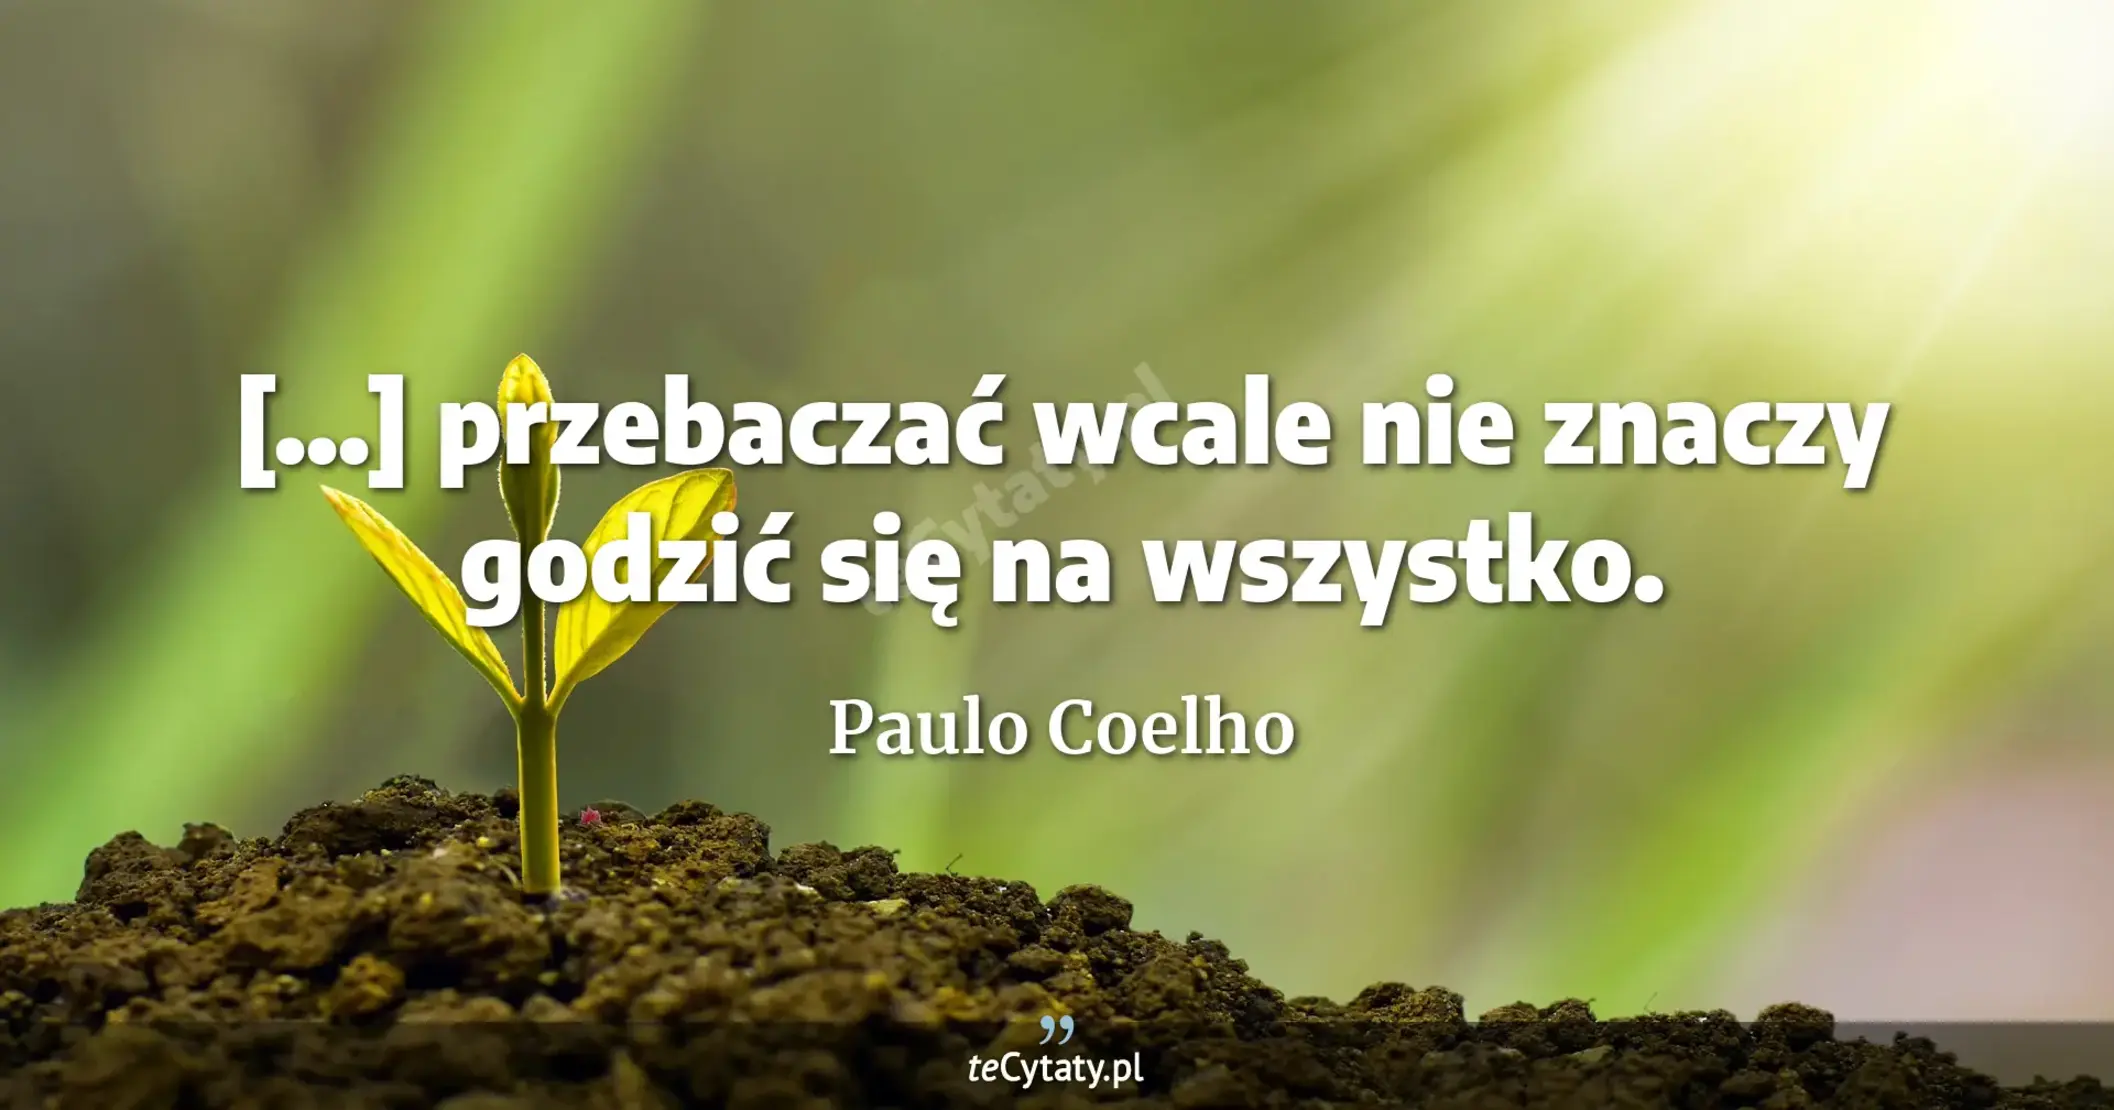 [...] przebaczać wcale nie znaczy godzić się na wszystko. - Paulo Coelho